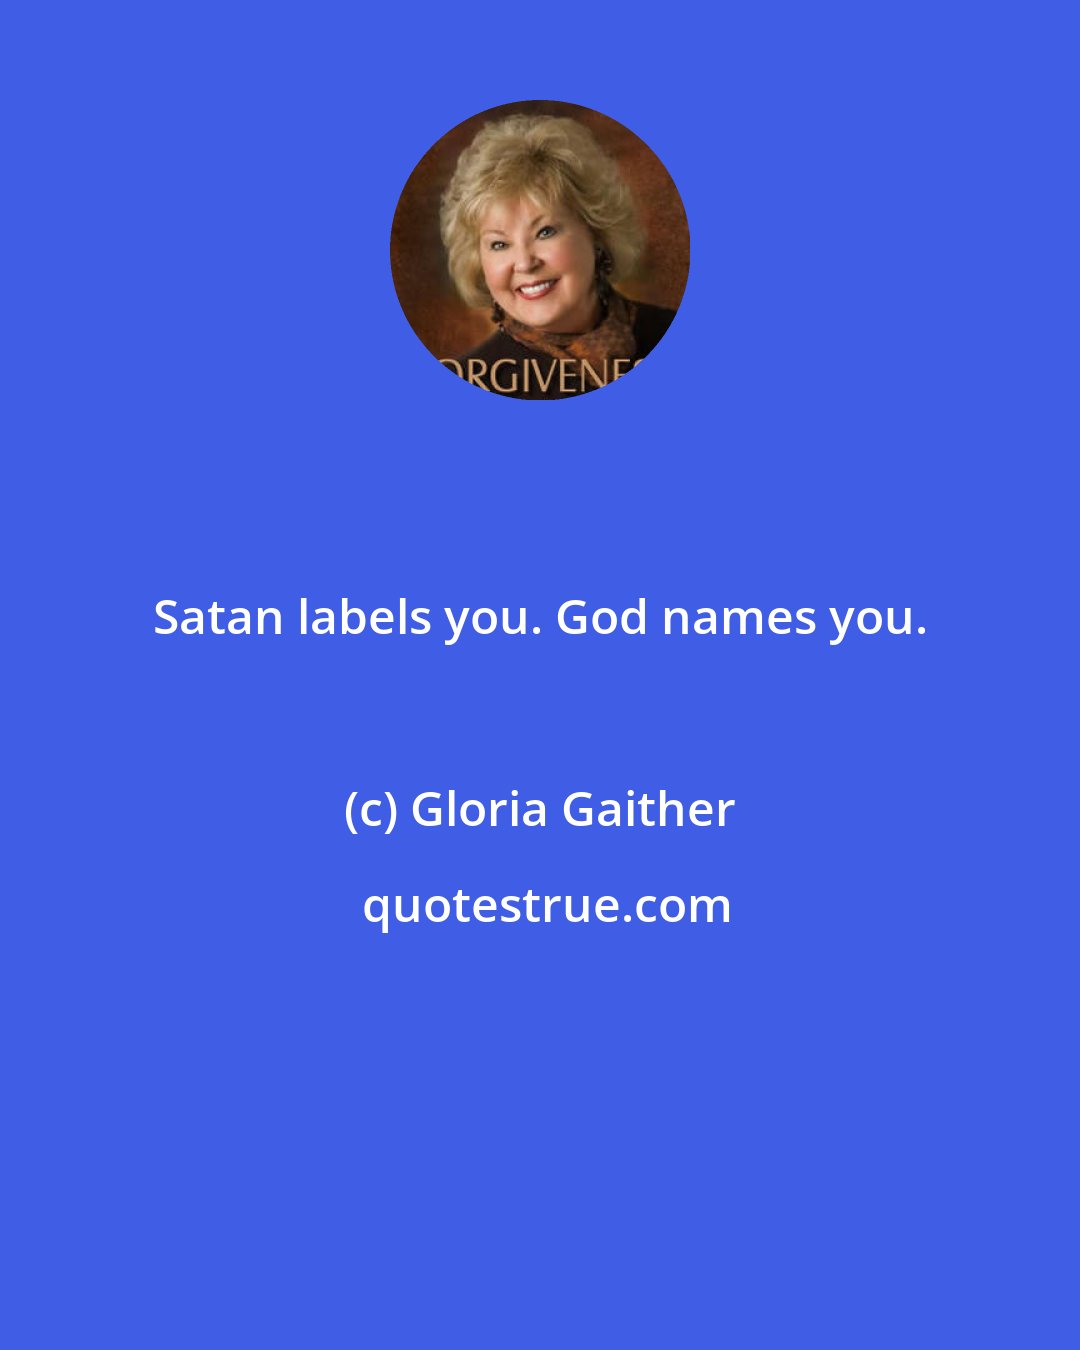 Gloria Gaither: Satan labels you. God names you.